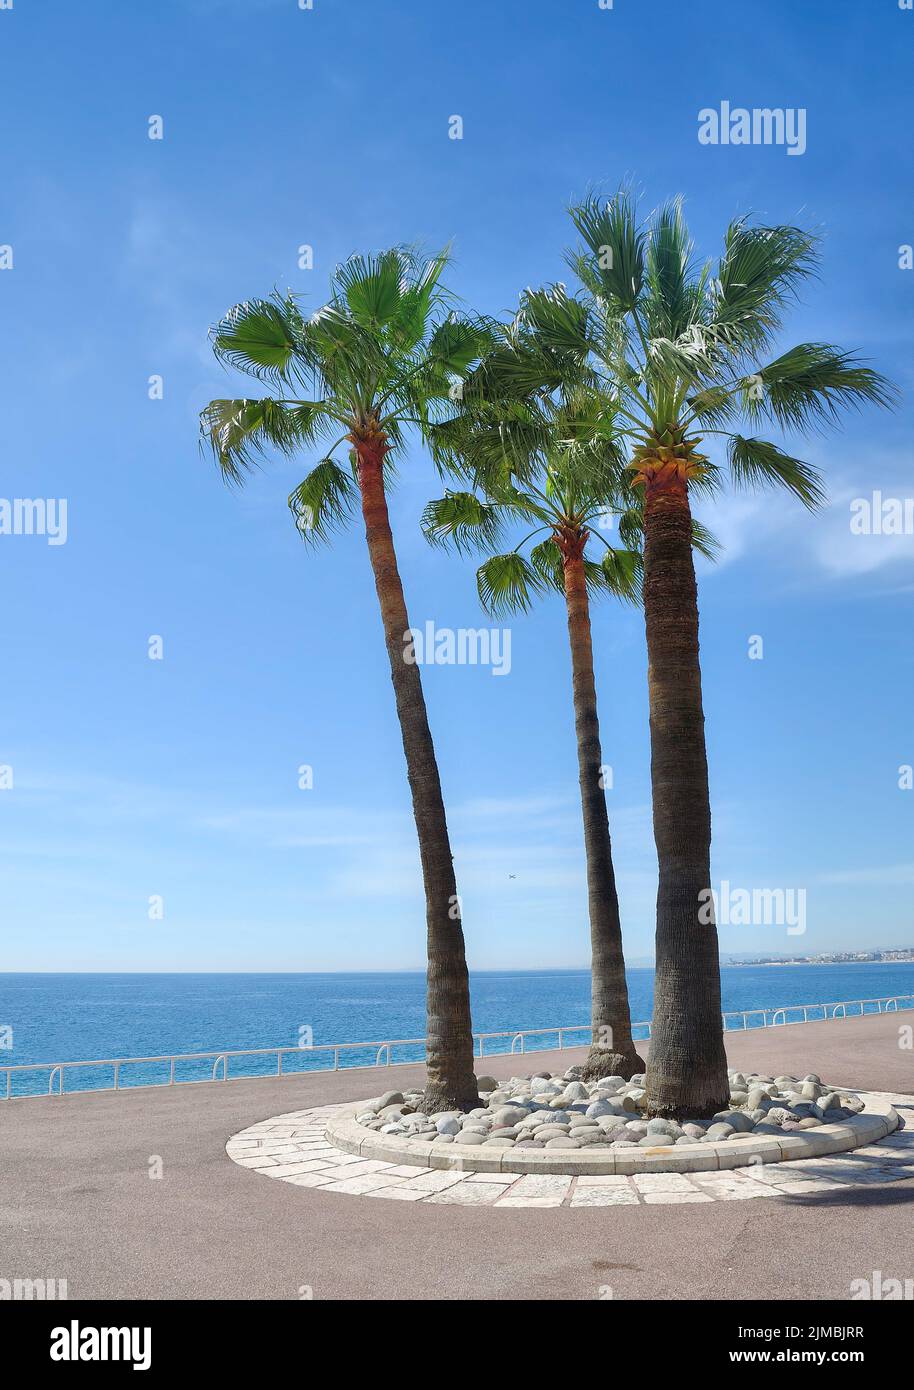 At Promenade de la Croisette,Cannes,Cote d`Azur,South of France Stock Photo